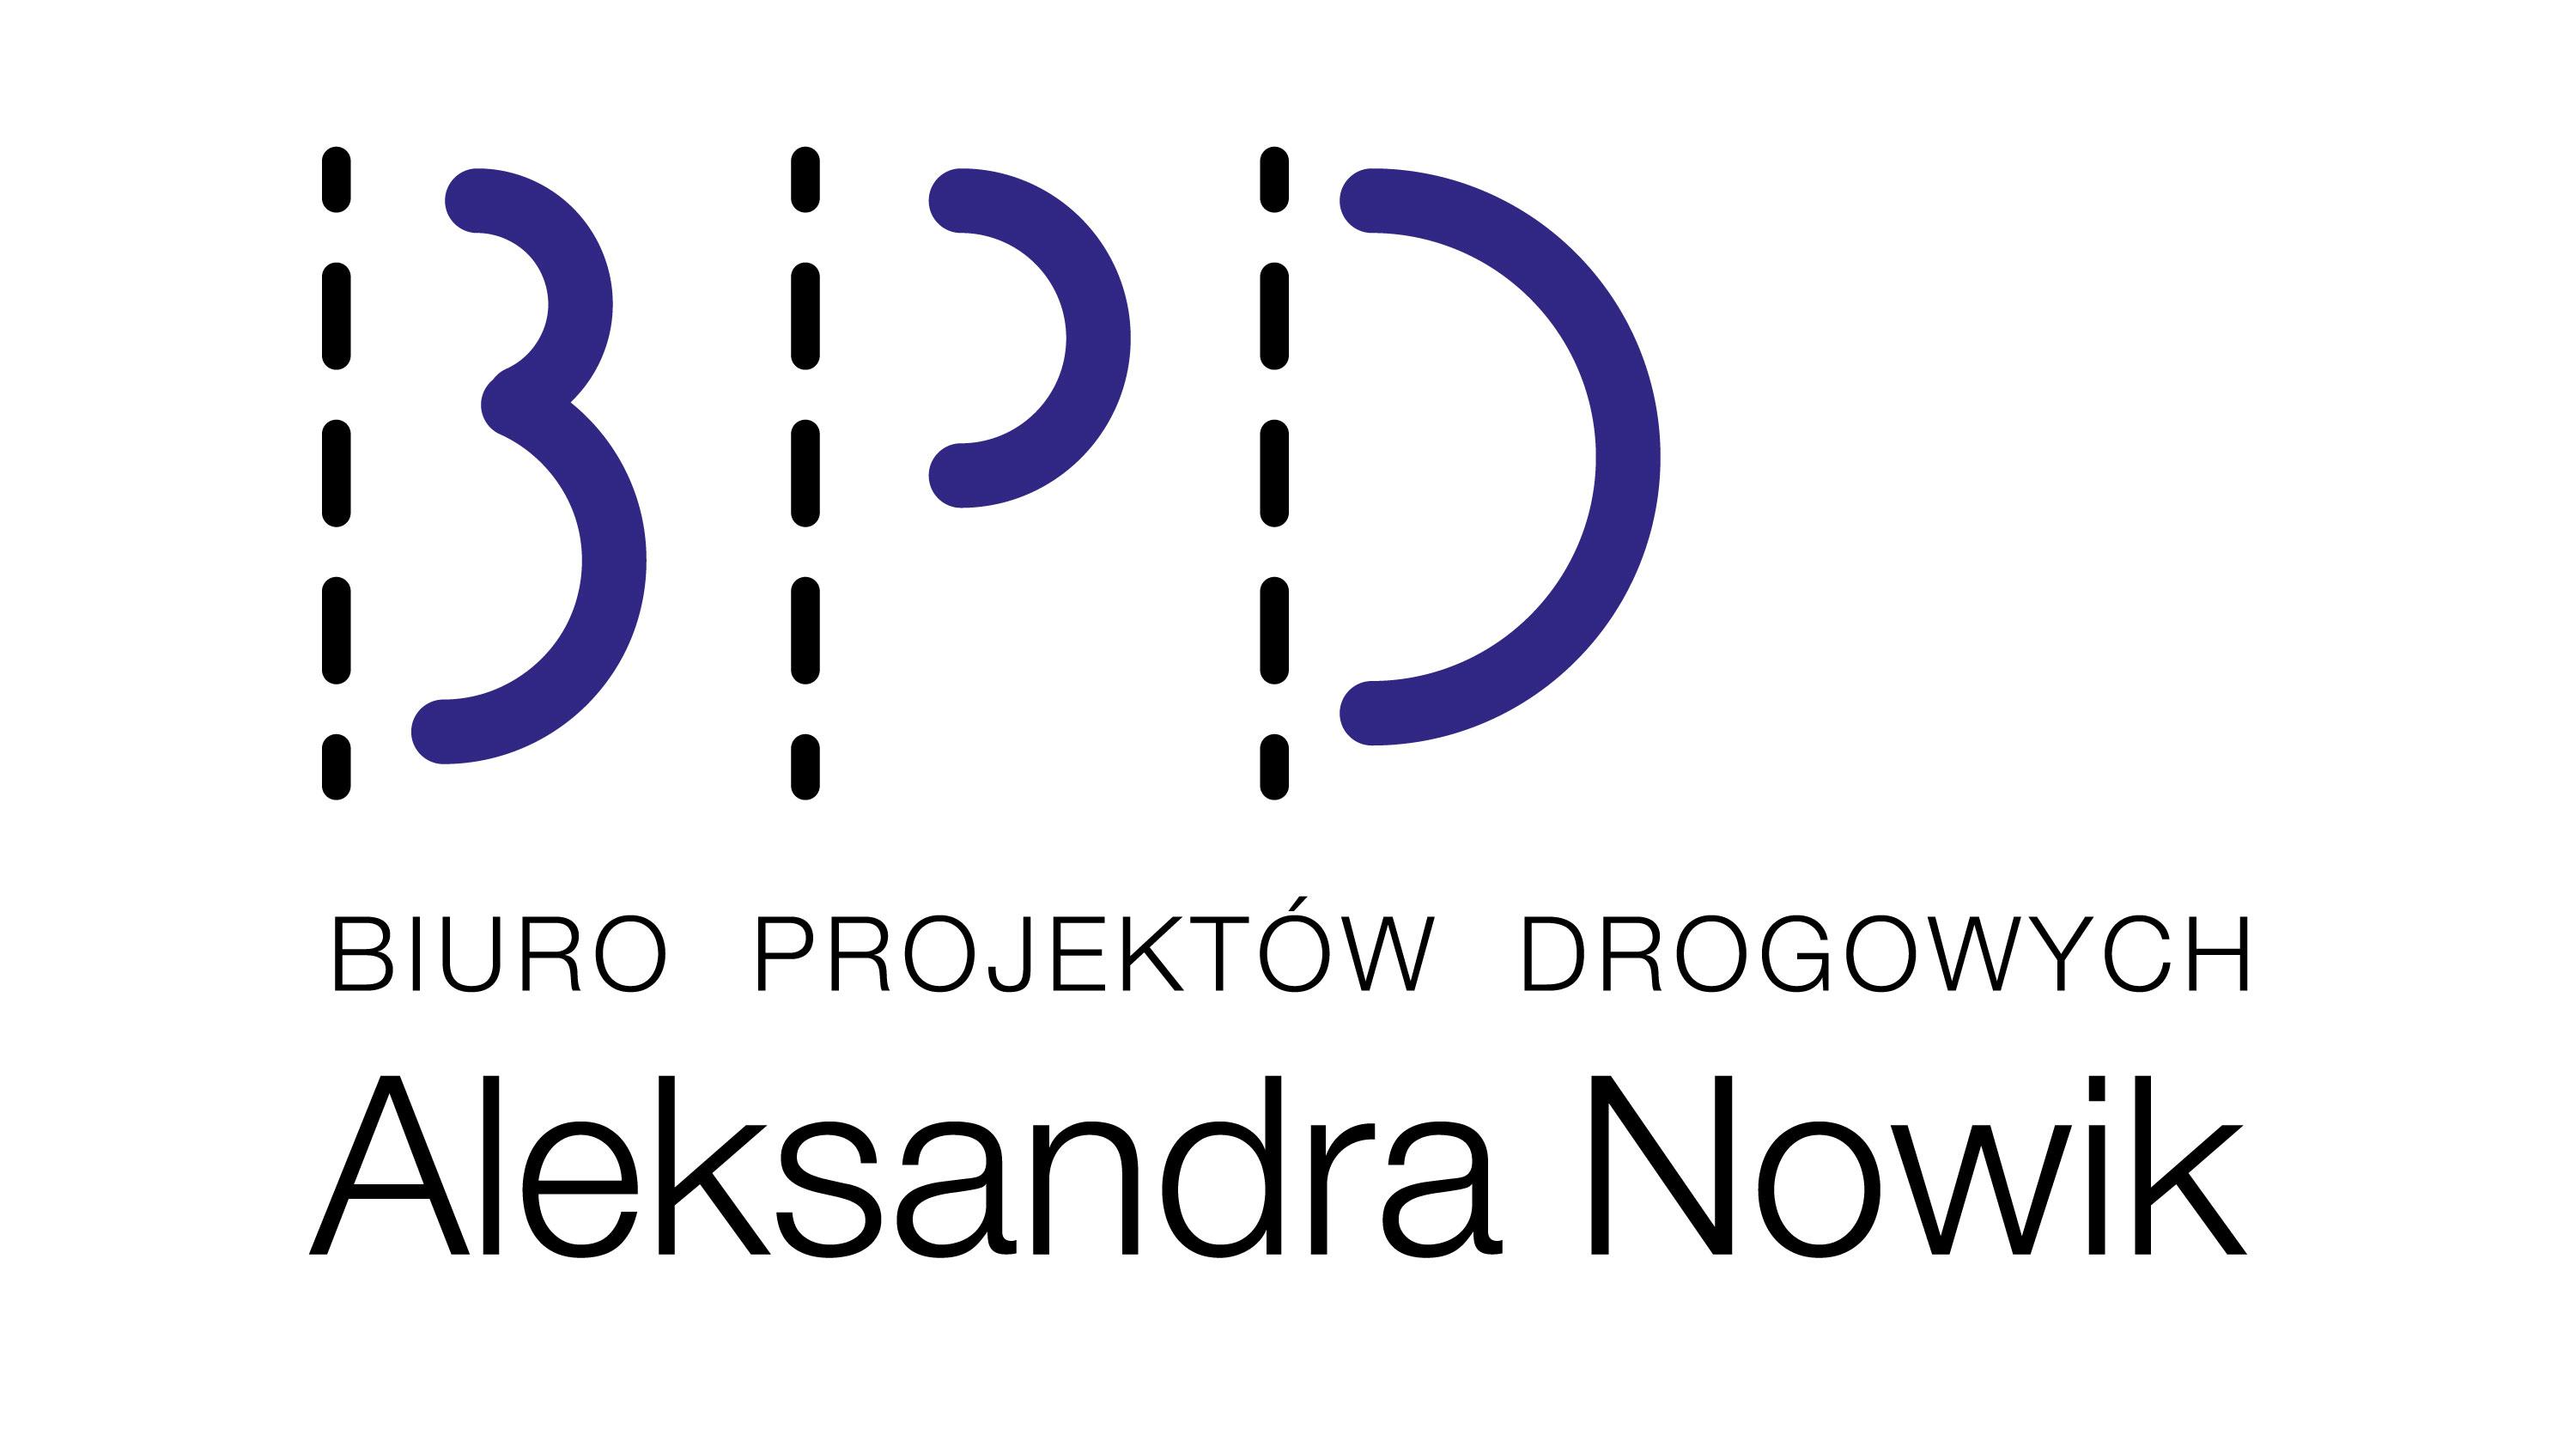 BPD - BIURO PROJEKTÓW DROGOWYCH ALEKSANDRA NOWIK